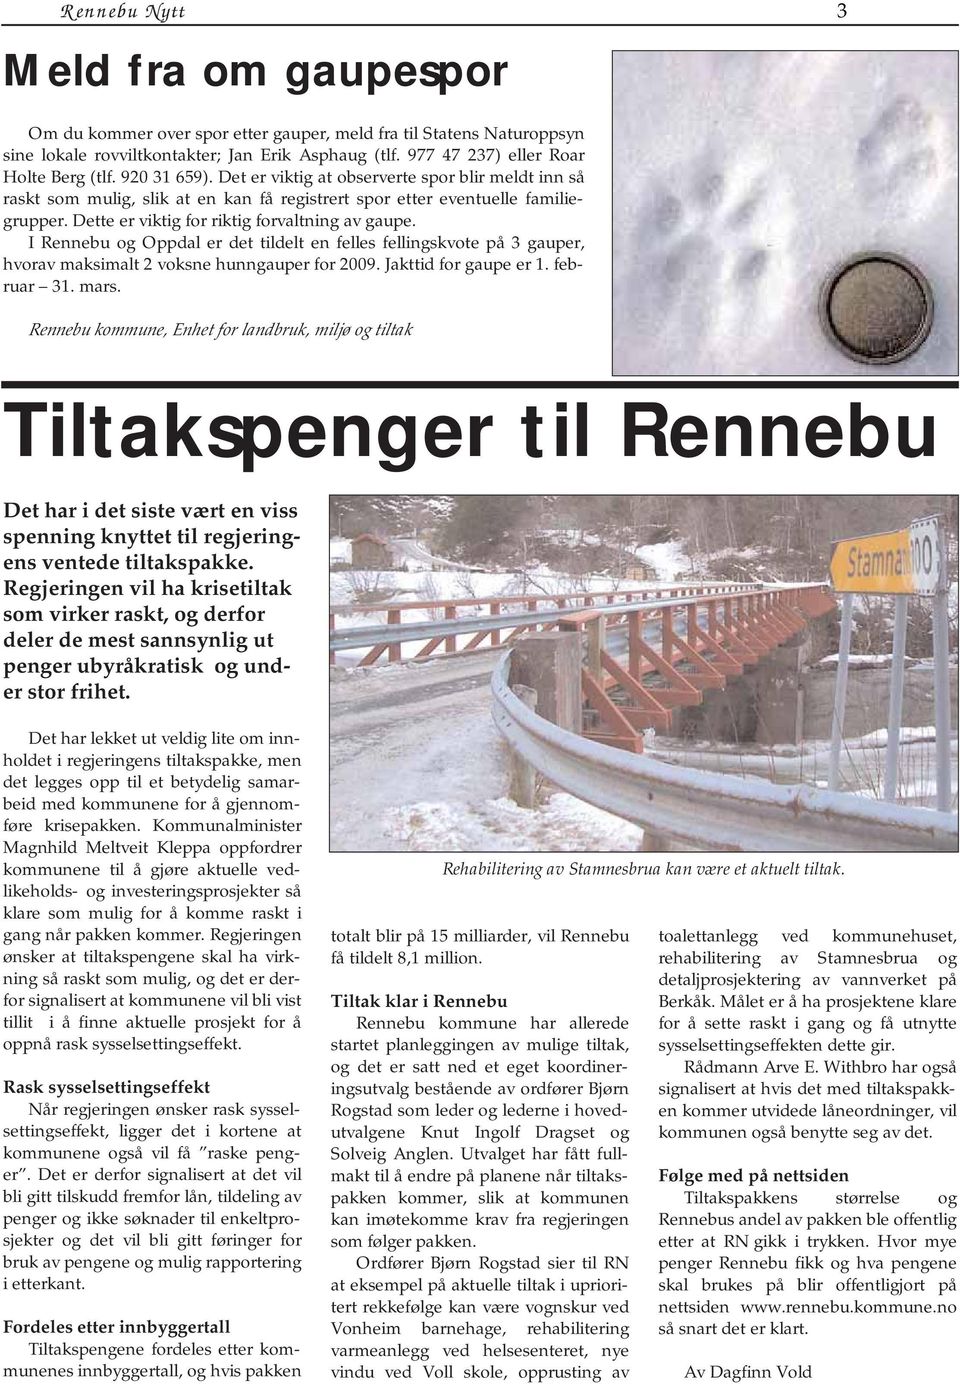 I Rennebu og Oppdal er det tildelt en felles fellingskvote på 3 gauper, hvorav maksimalt 2 voksne hunngauper for 2009. Jakttid for gaupe er 1. februar 31. mars.